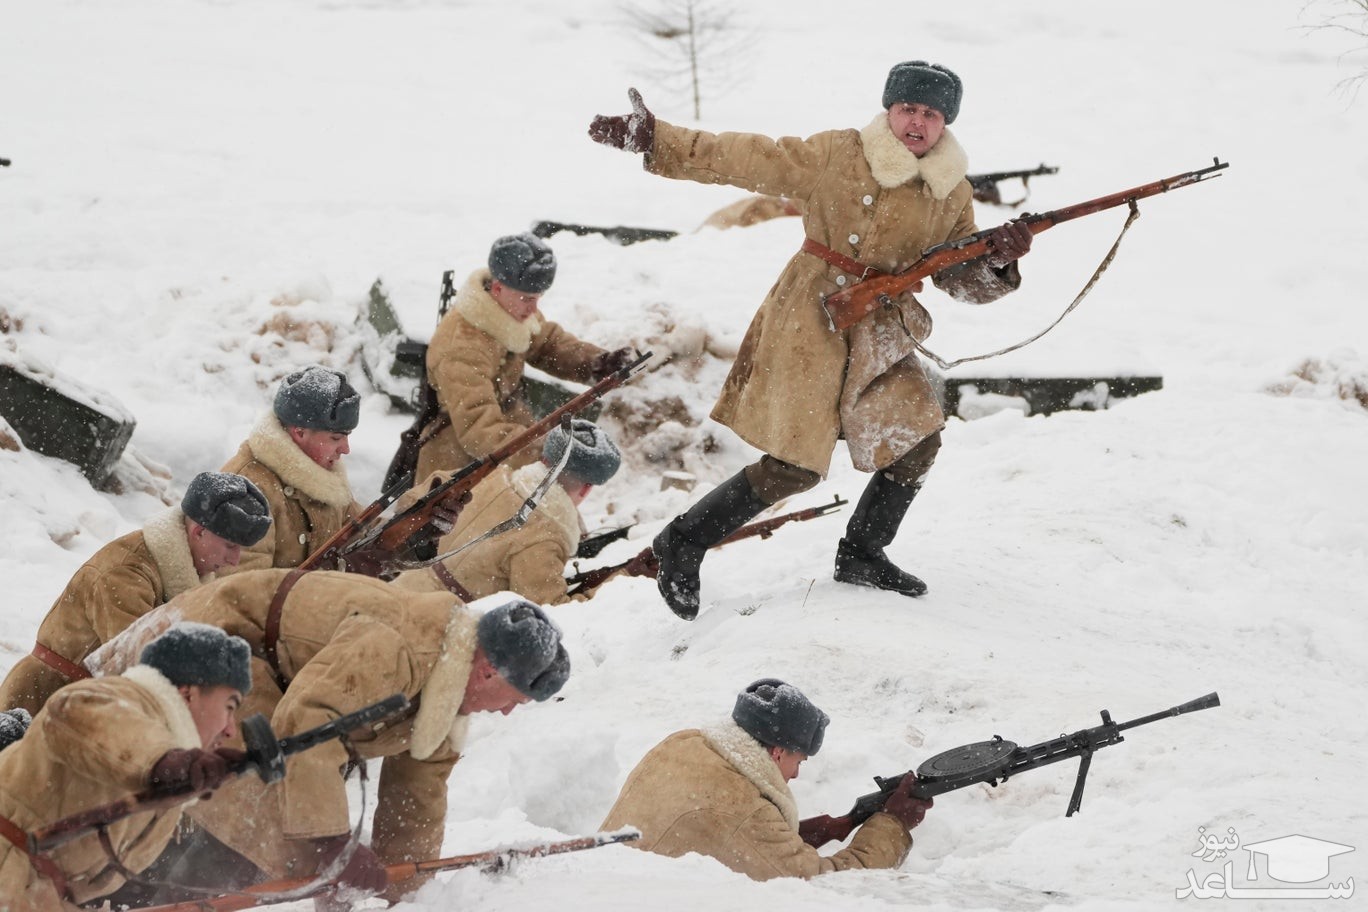 سربازان روسی با لباس فرم ارتش سرخ شوروی در دوران جنگ دوم جهانی در هشتادمین سالگرد نبرد مسکو صحنه نبرد را بازسازی کرده اند./ آسوشیتدپرس